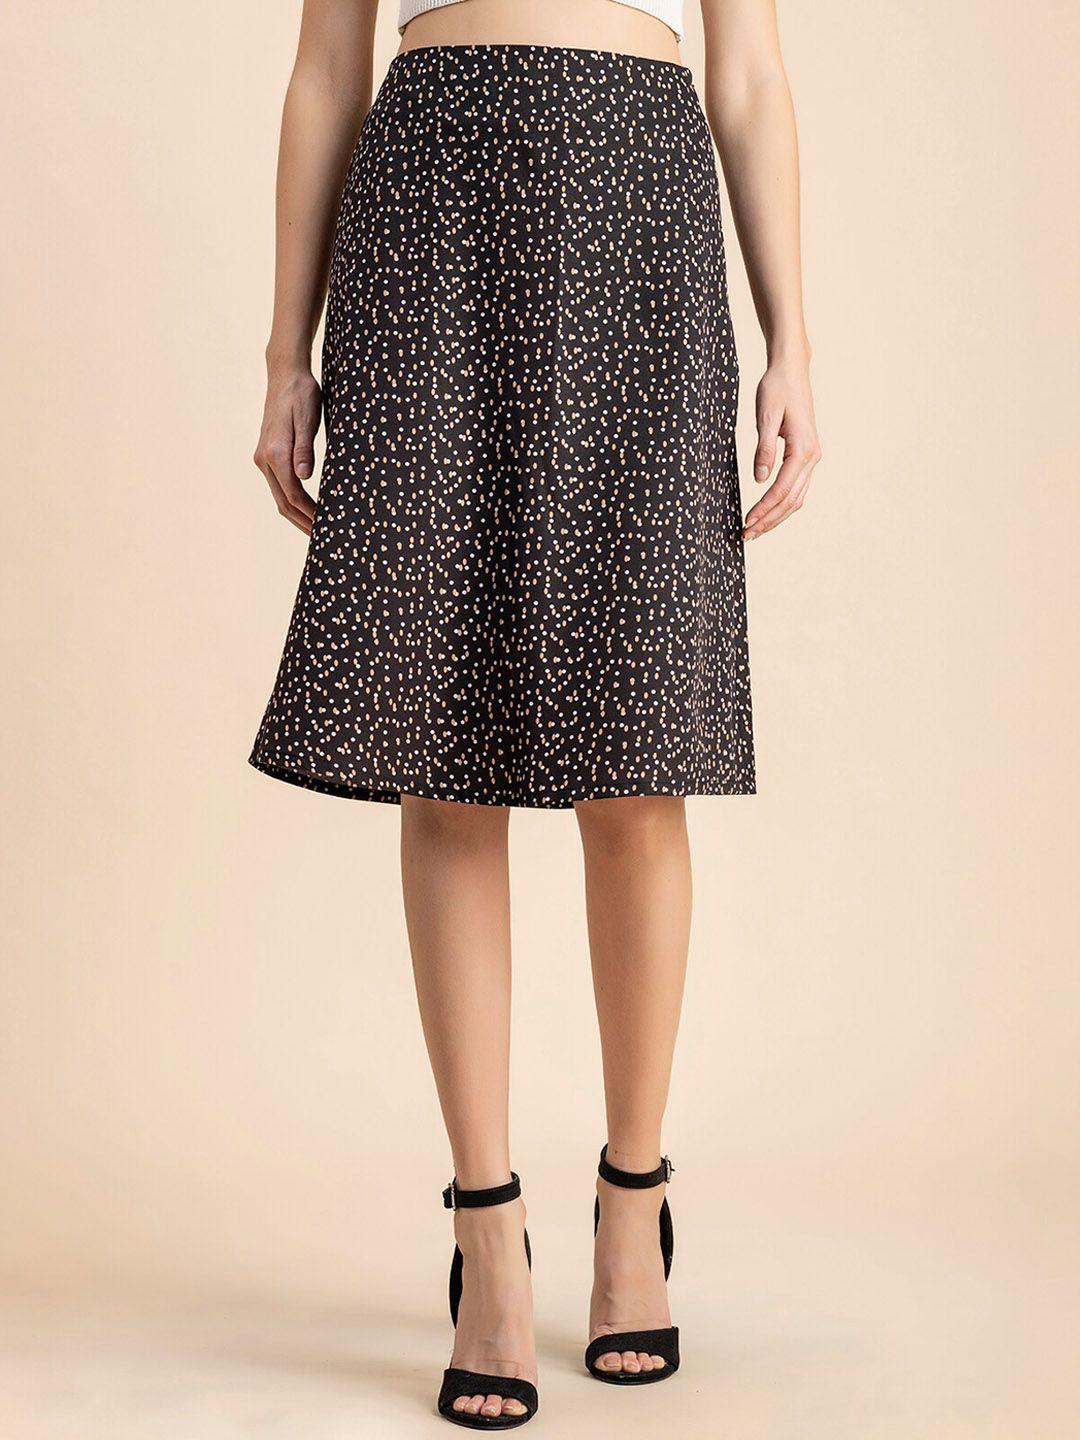 moomaya polka dot printed crepe a-line skirt